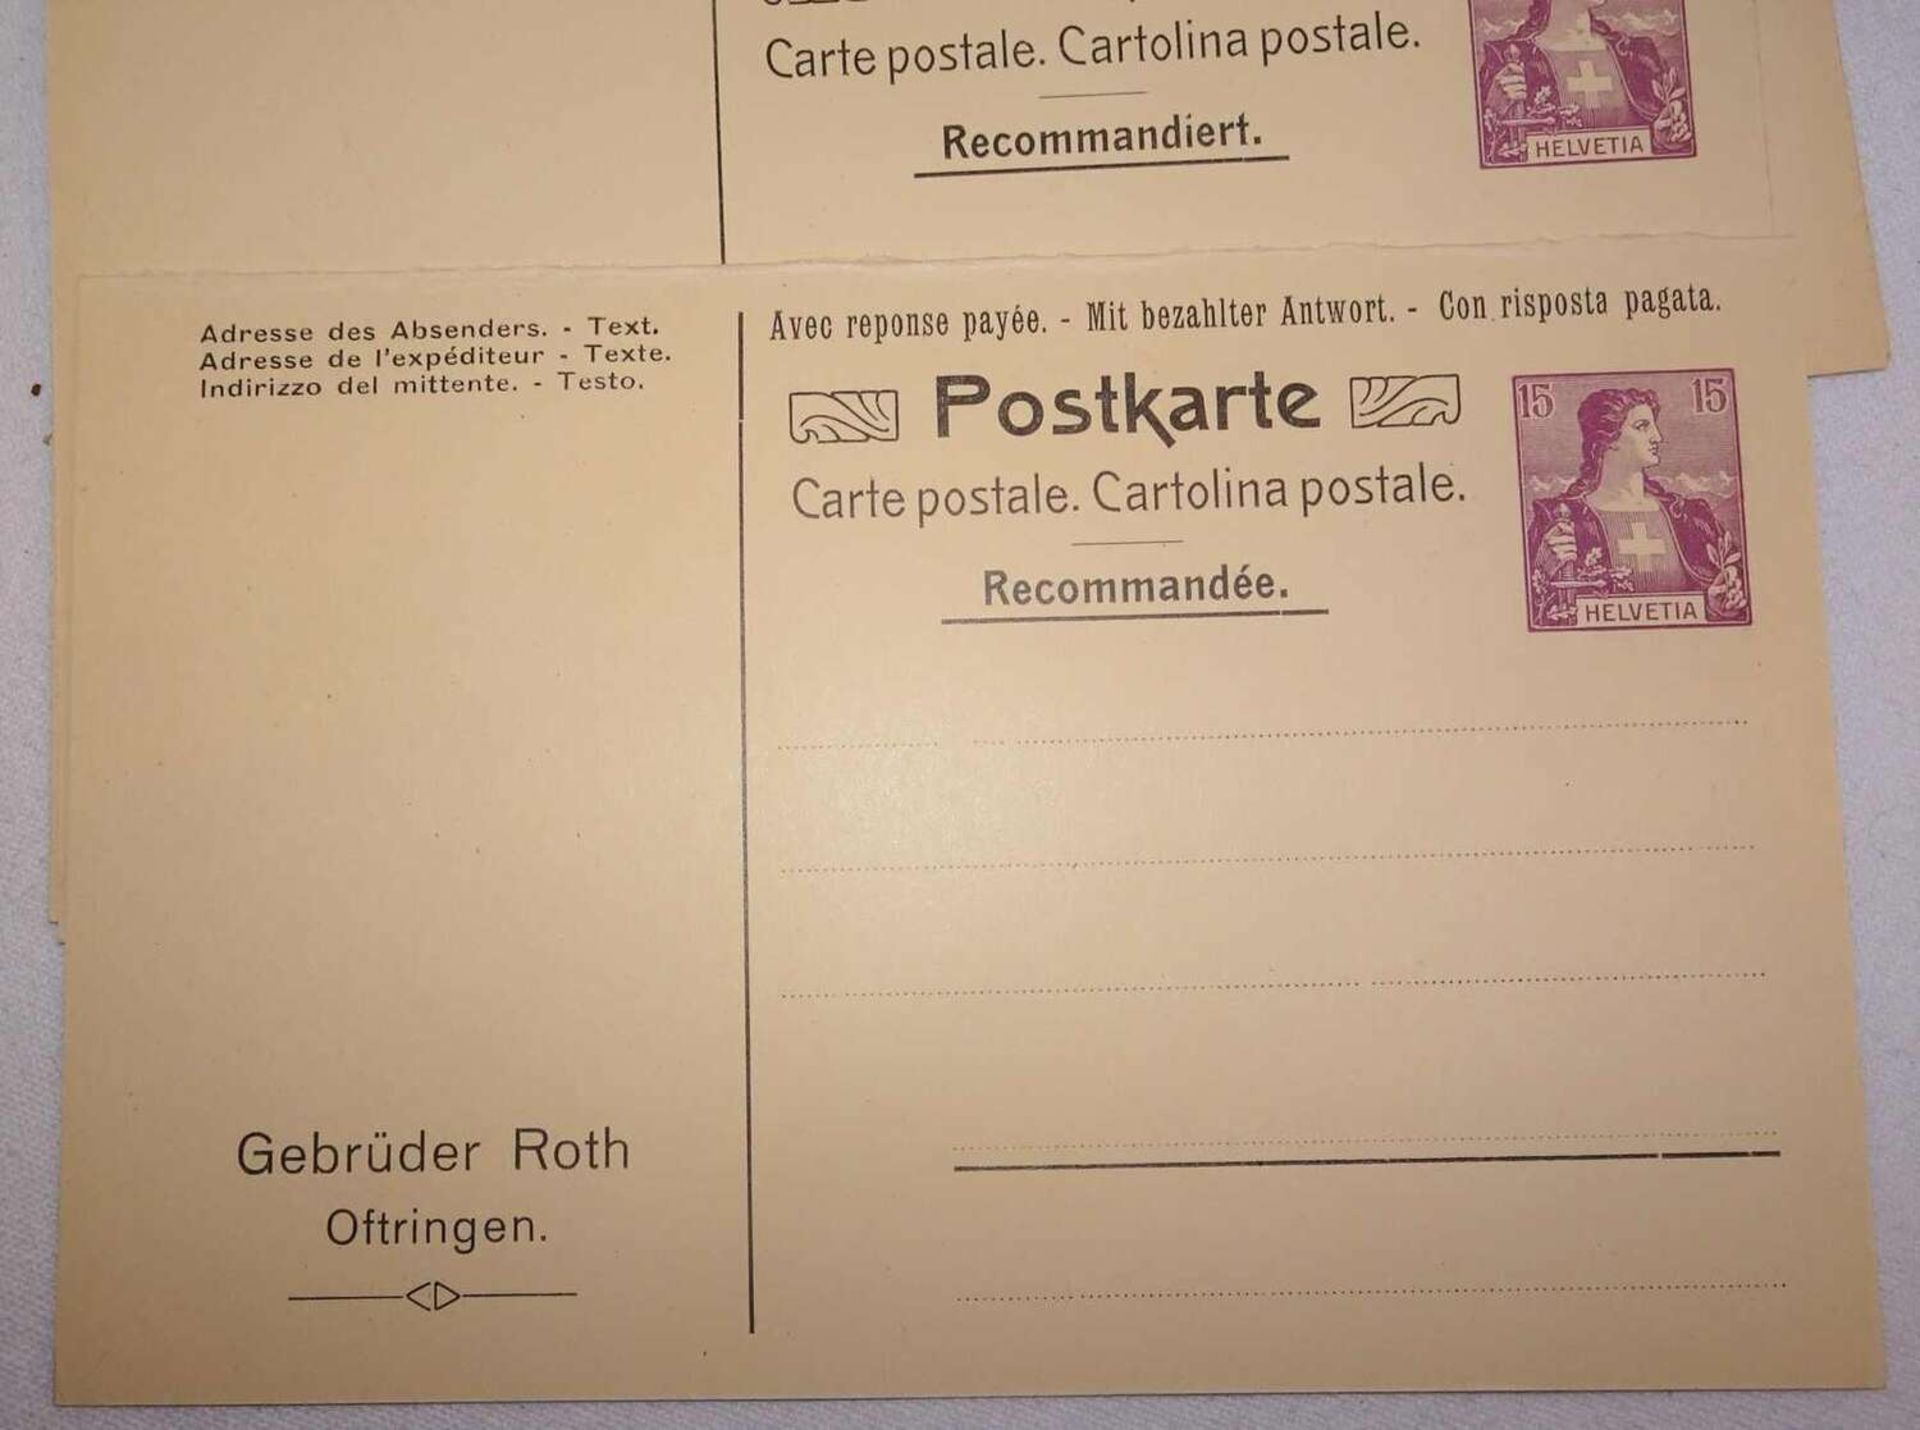 Schweiz - Privat-Antwort-Postkarten der Gebrüder Roth Oftringen mit Wertstempel Helvetia 10 C. rot - Image 2 of 2